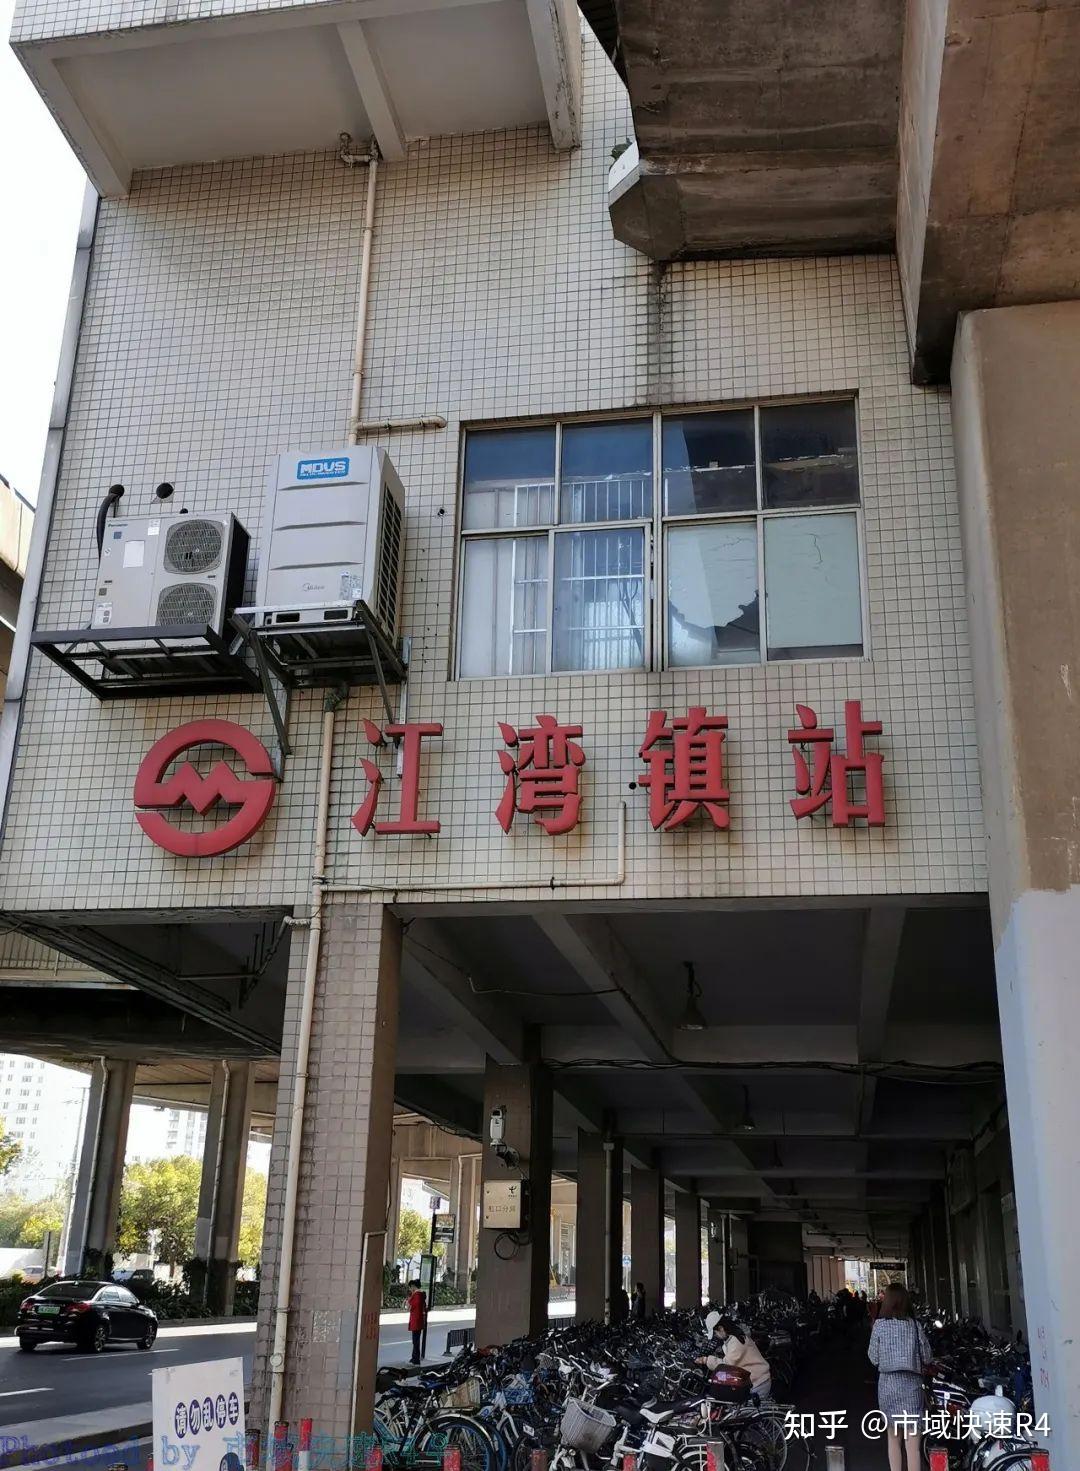 江湾镇站站外,这是最后一个红色调车站